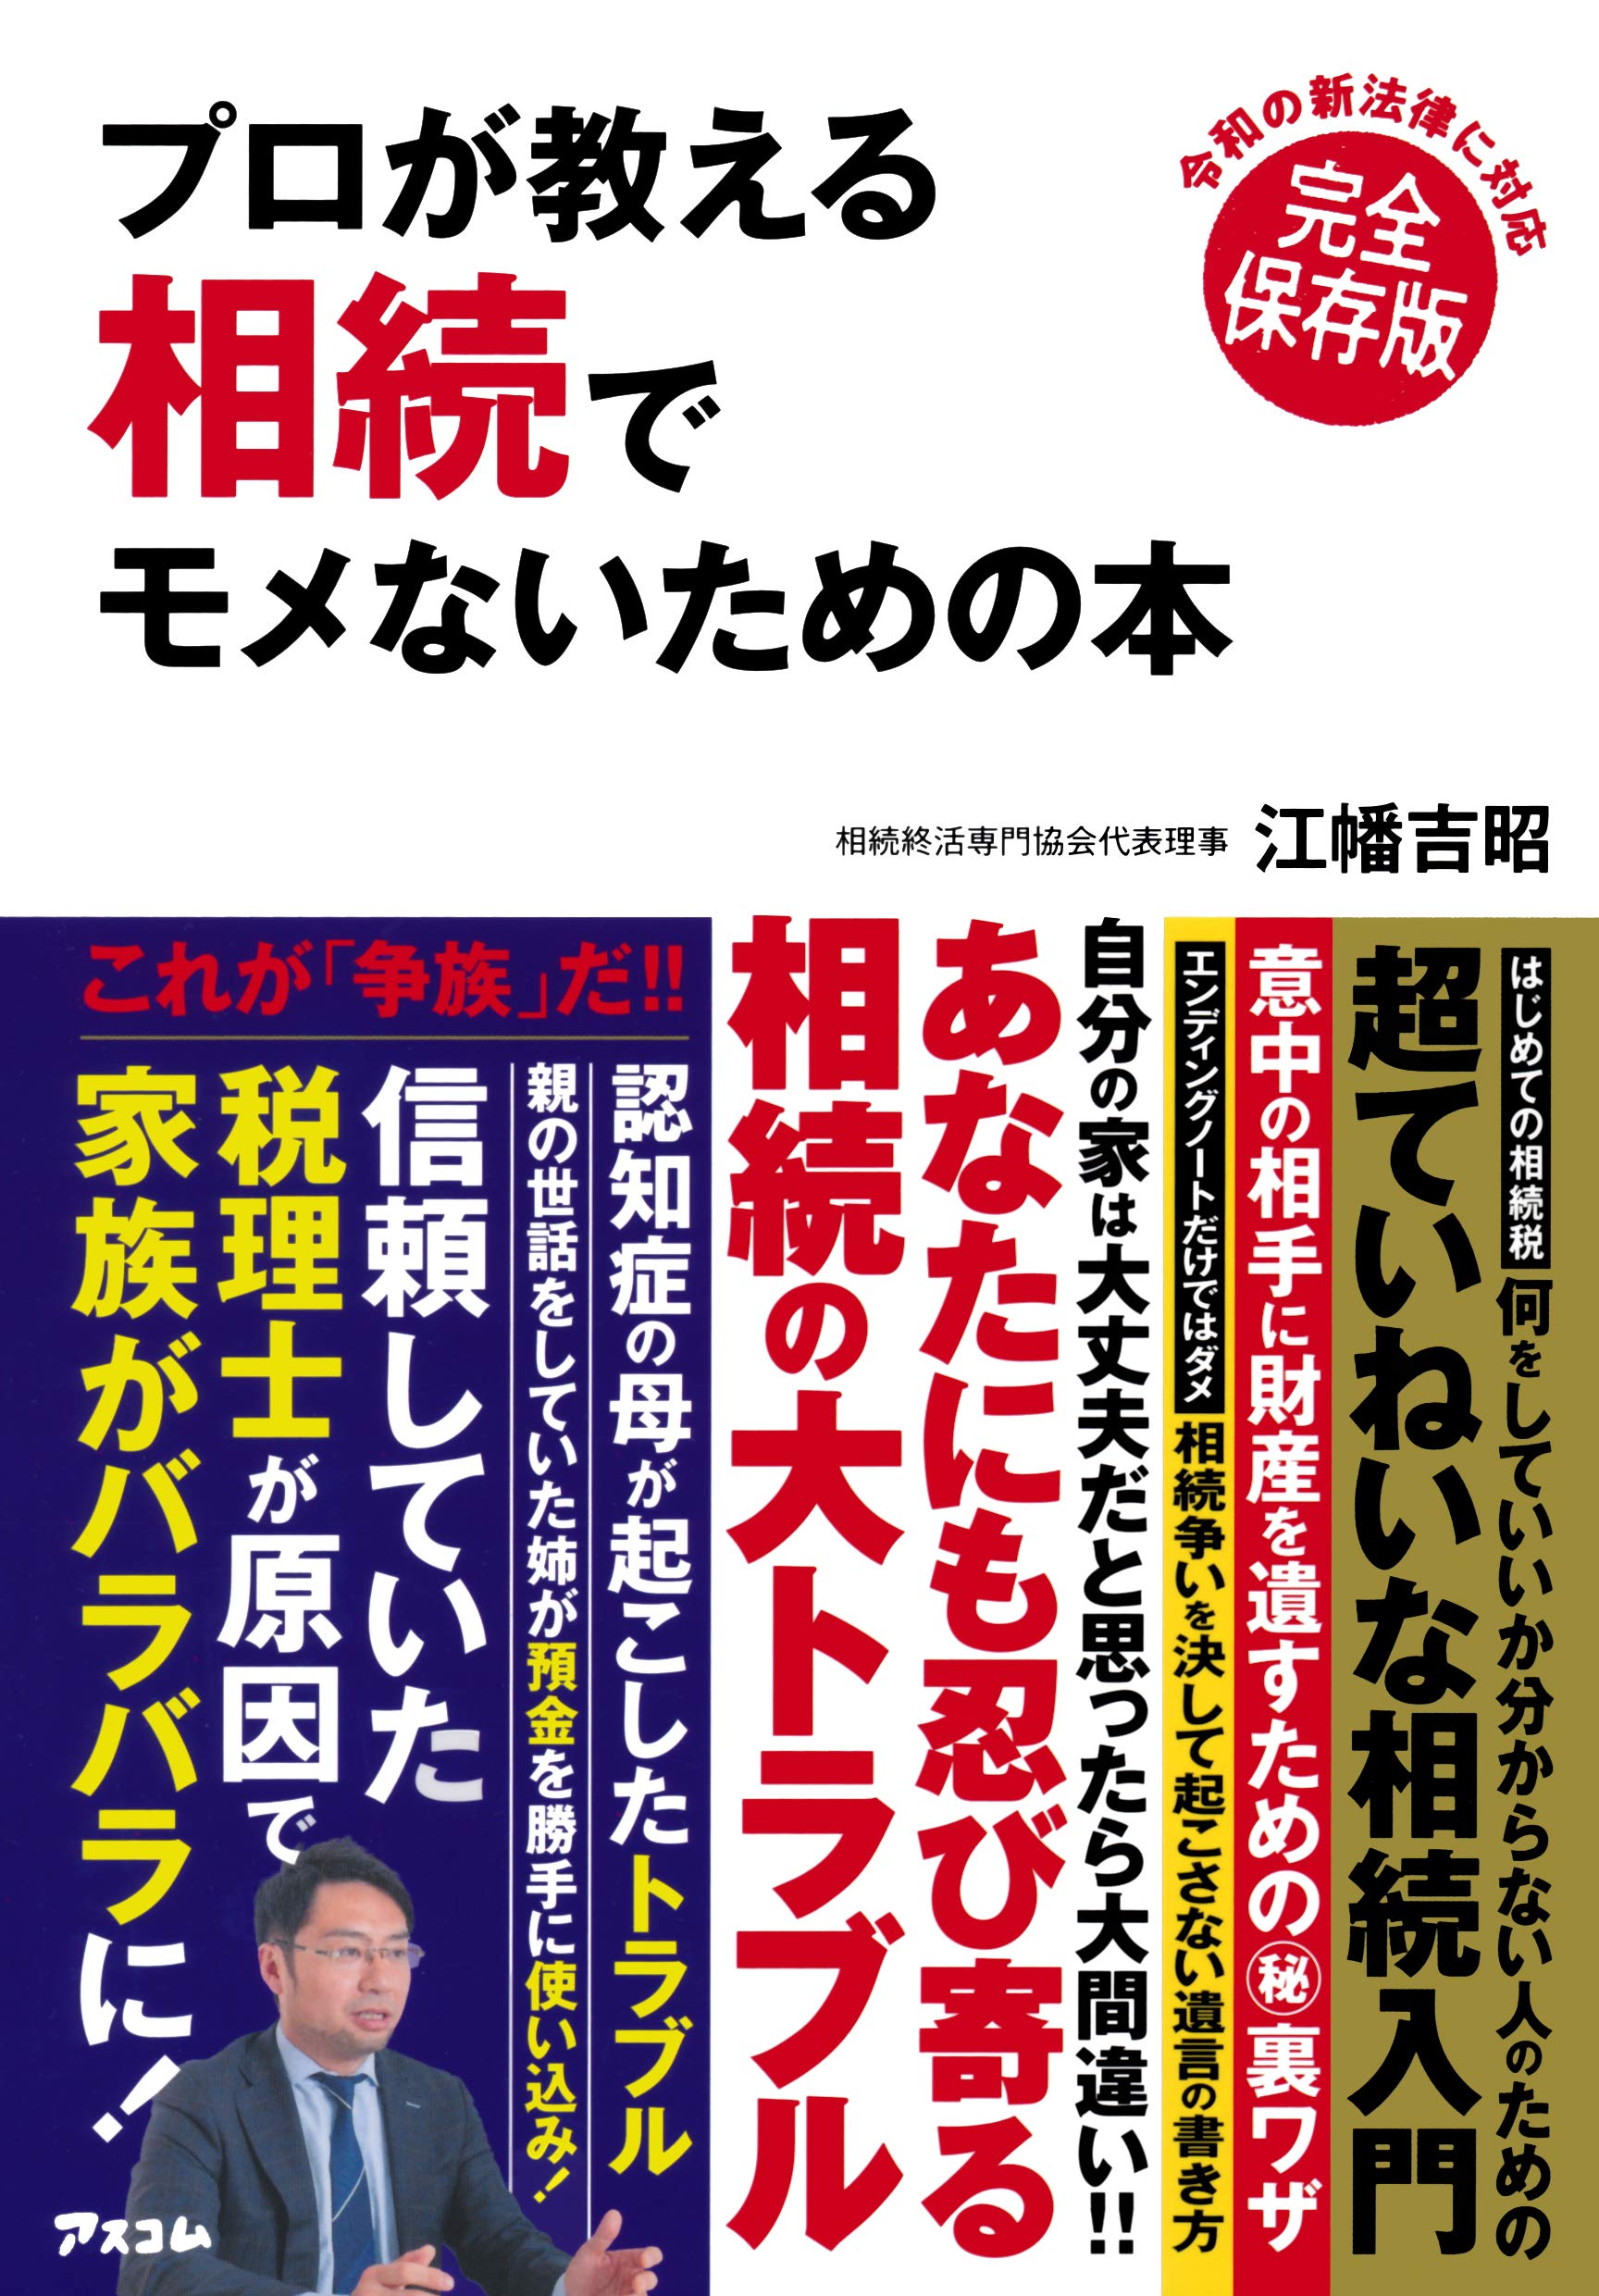 代表理事 貞方がコメントした記事が、週刊現代7月1・8号に掲載されています